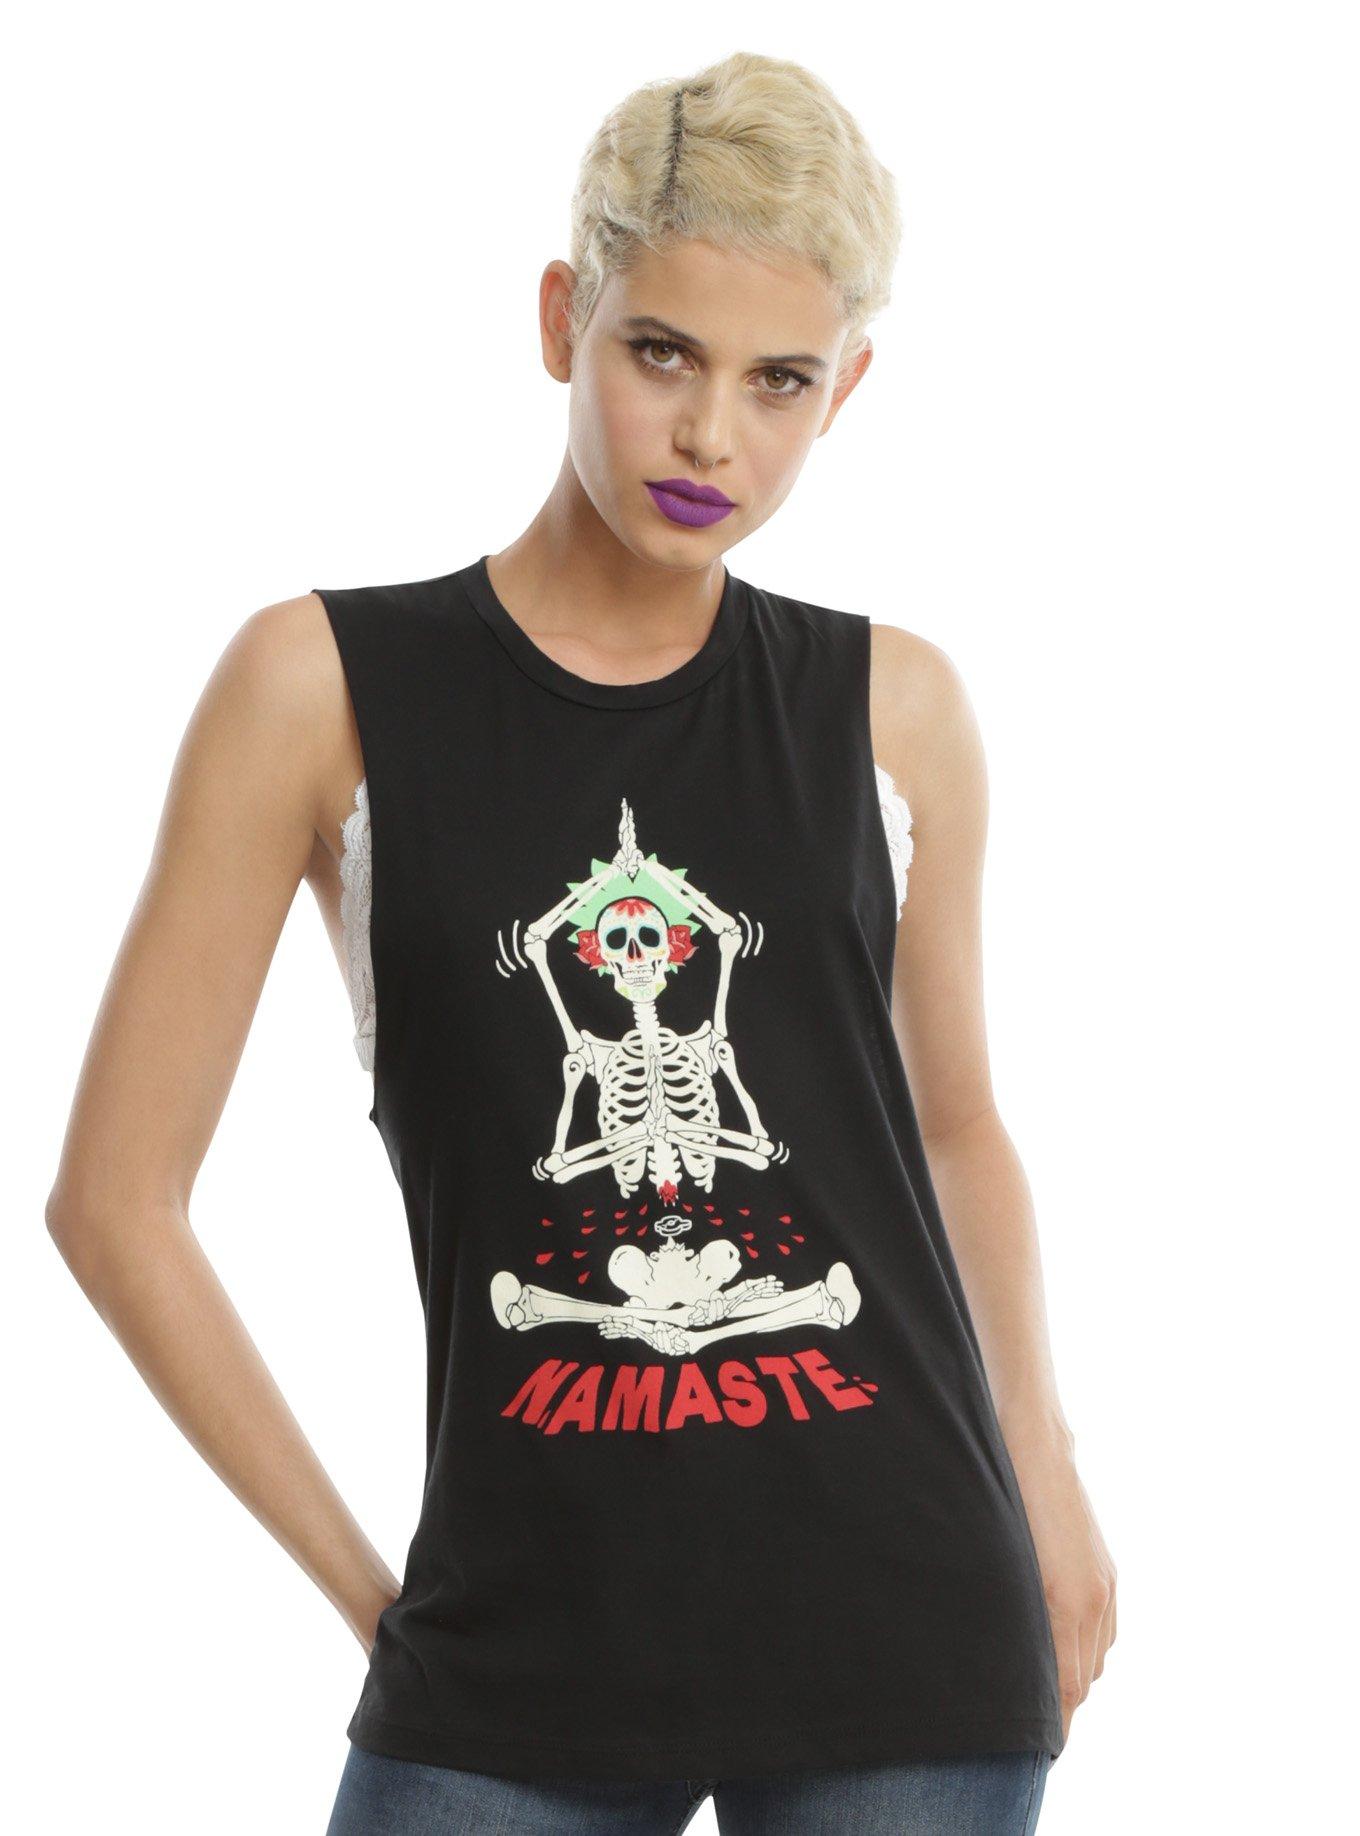 Namaste Skeleton Girls Muscle Top, BLACK, hi-res